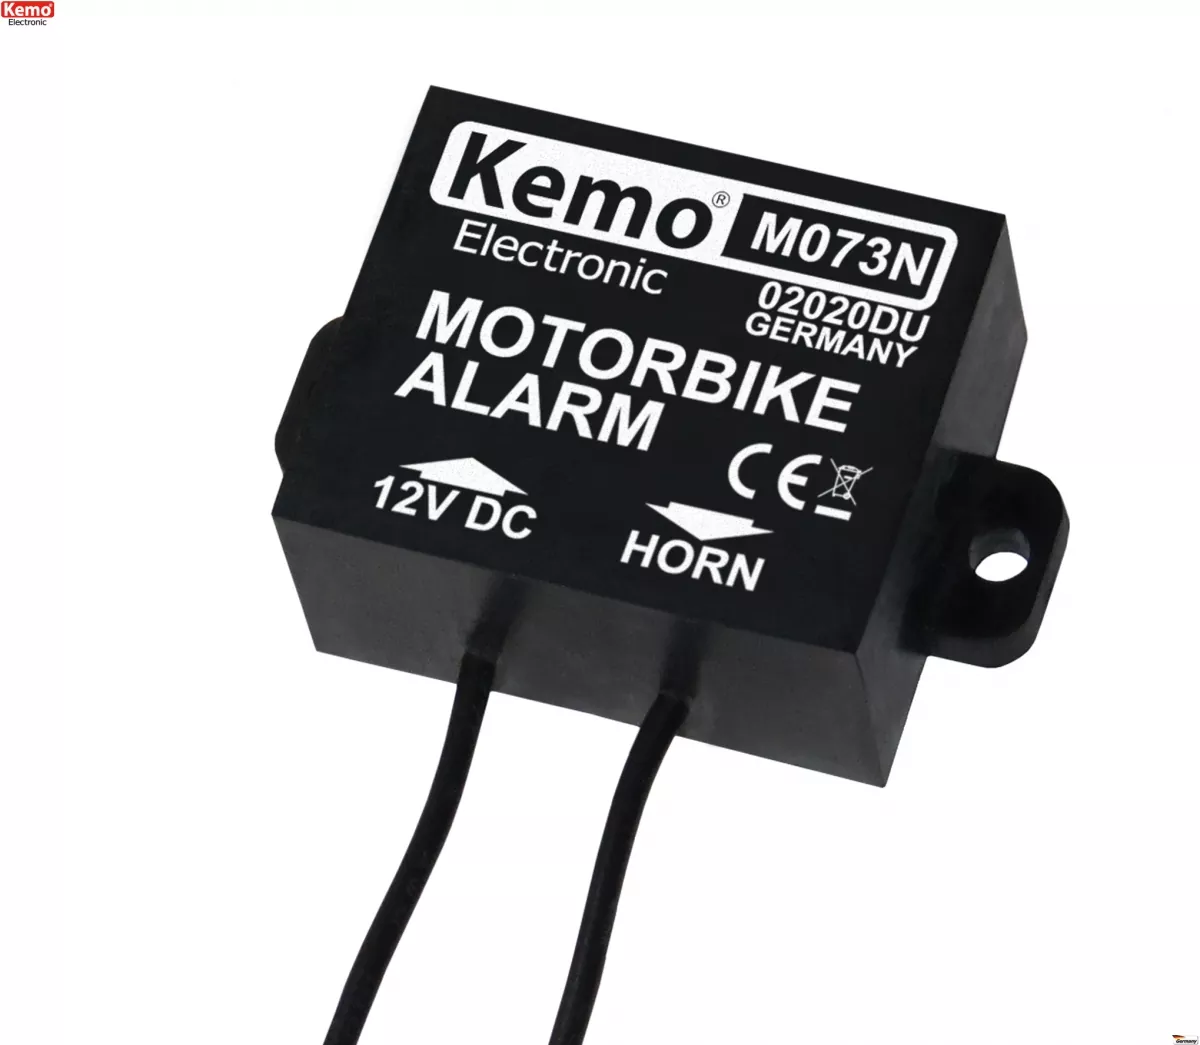 Kemo-Electronic M073N Motorrad Alarm Neigungssensor Kemo M073N M073N